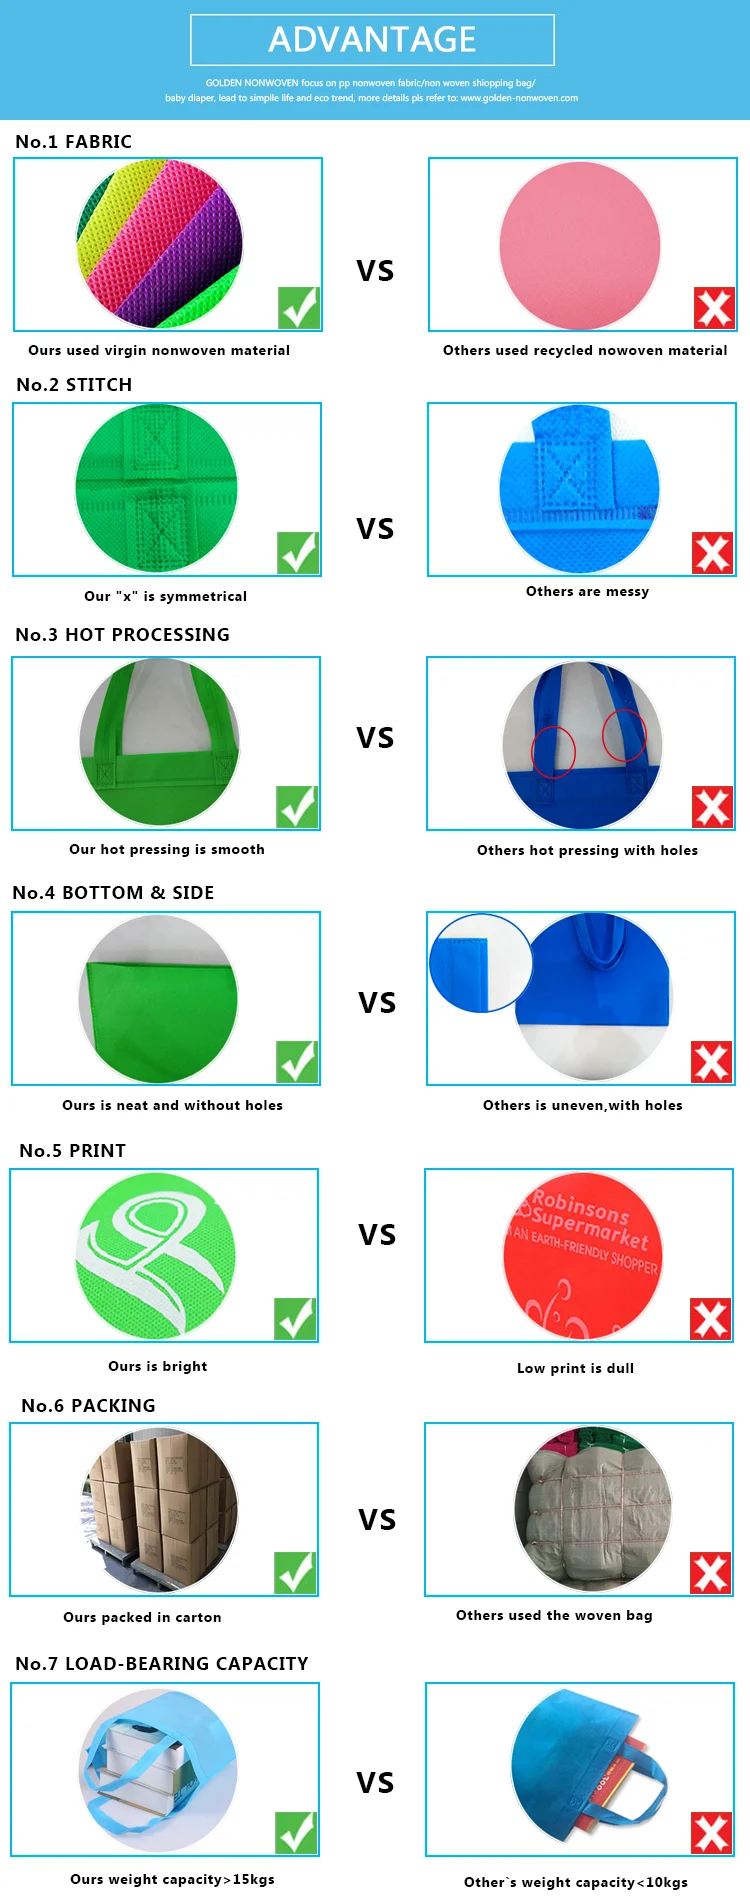 Cheap polypropylene Non Woven Foldable Shopping Bags Wholesale